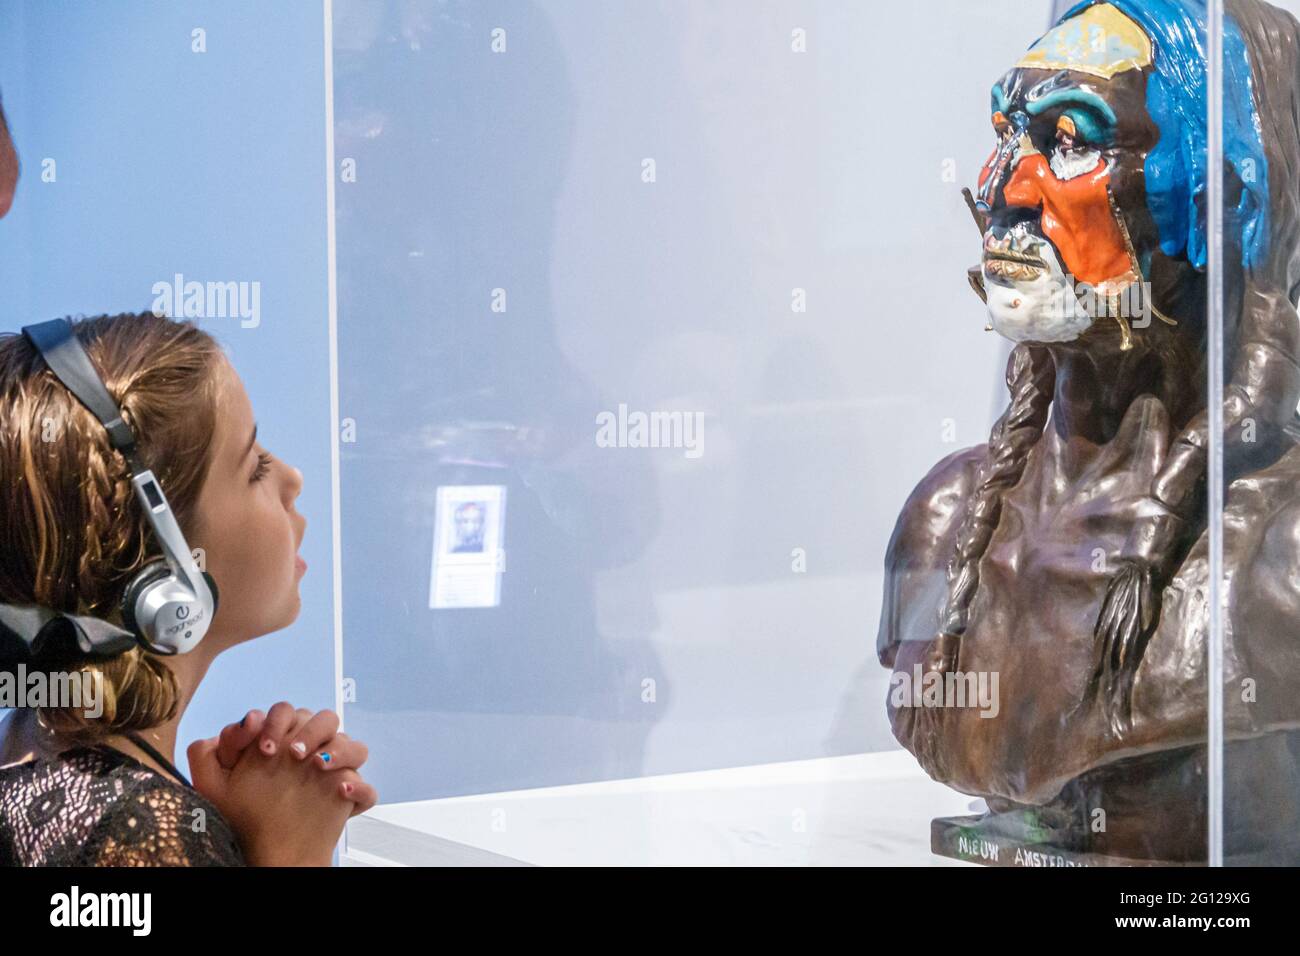 Florida Saint-Pétersbourg Salvador Dali Museum galerie d'art à l'intérieur de Nieuw Amsterdam buste de White Eagle sculpture peint bronze homme femme fille fathe Banque D'Images